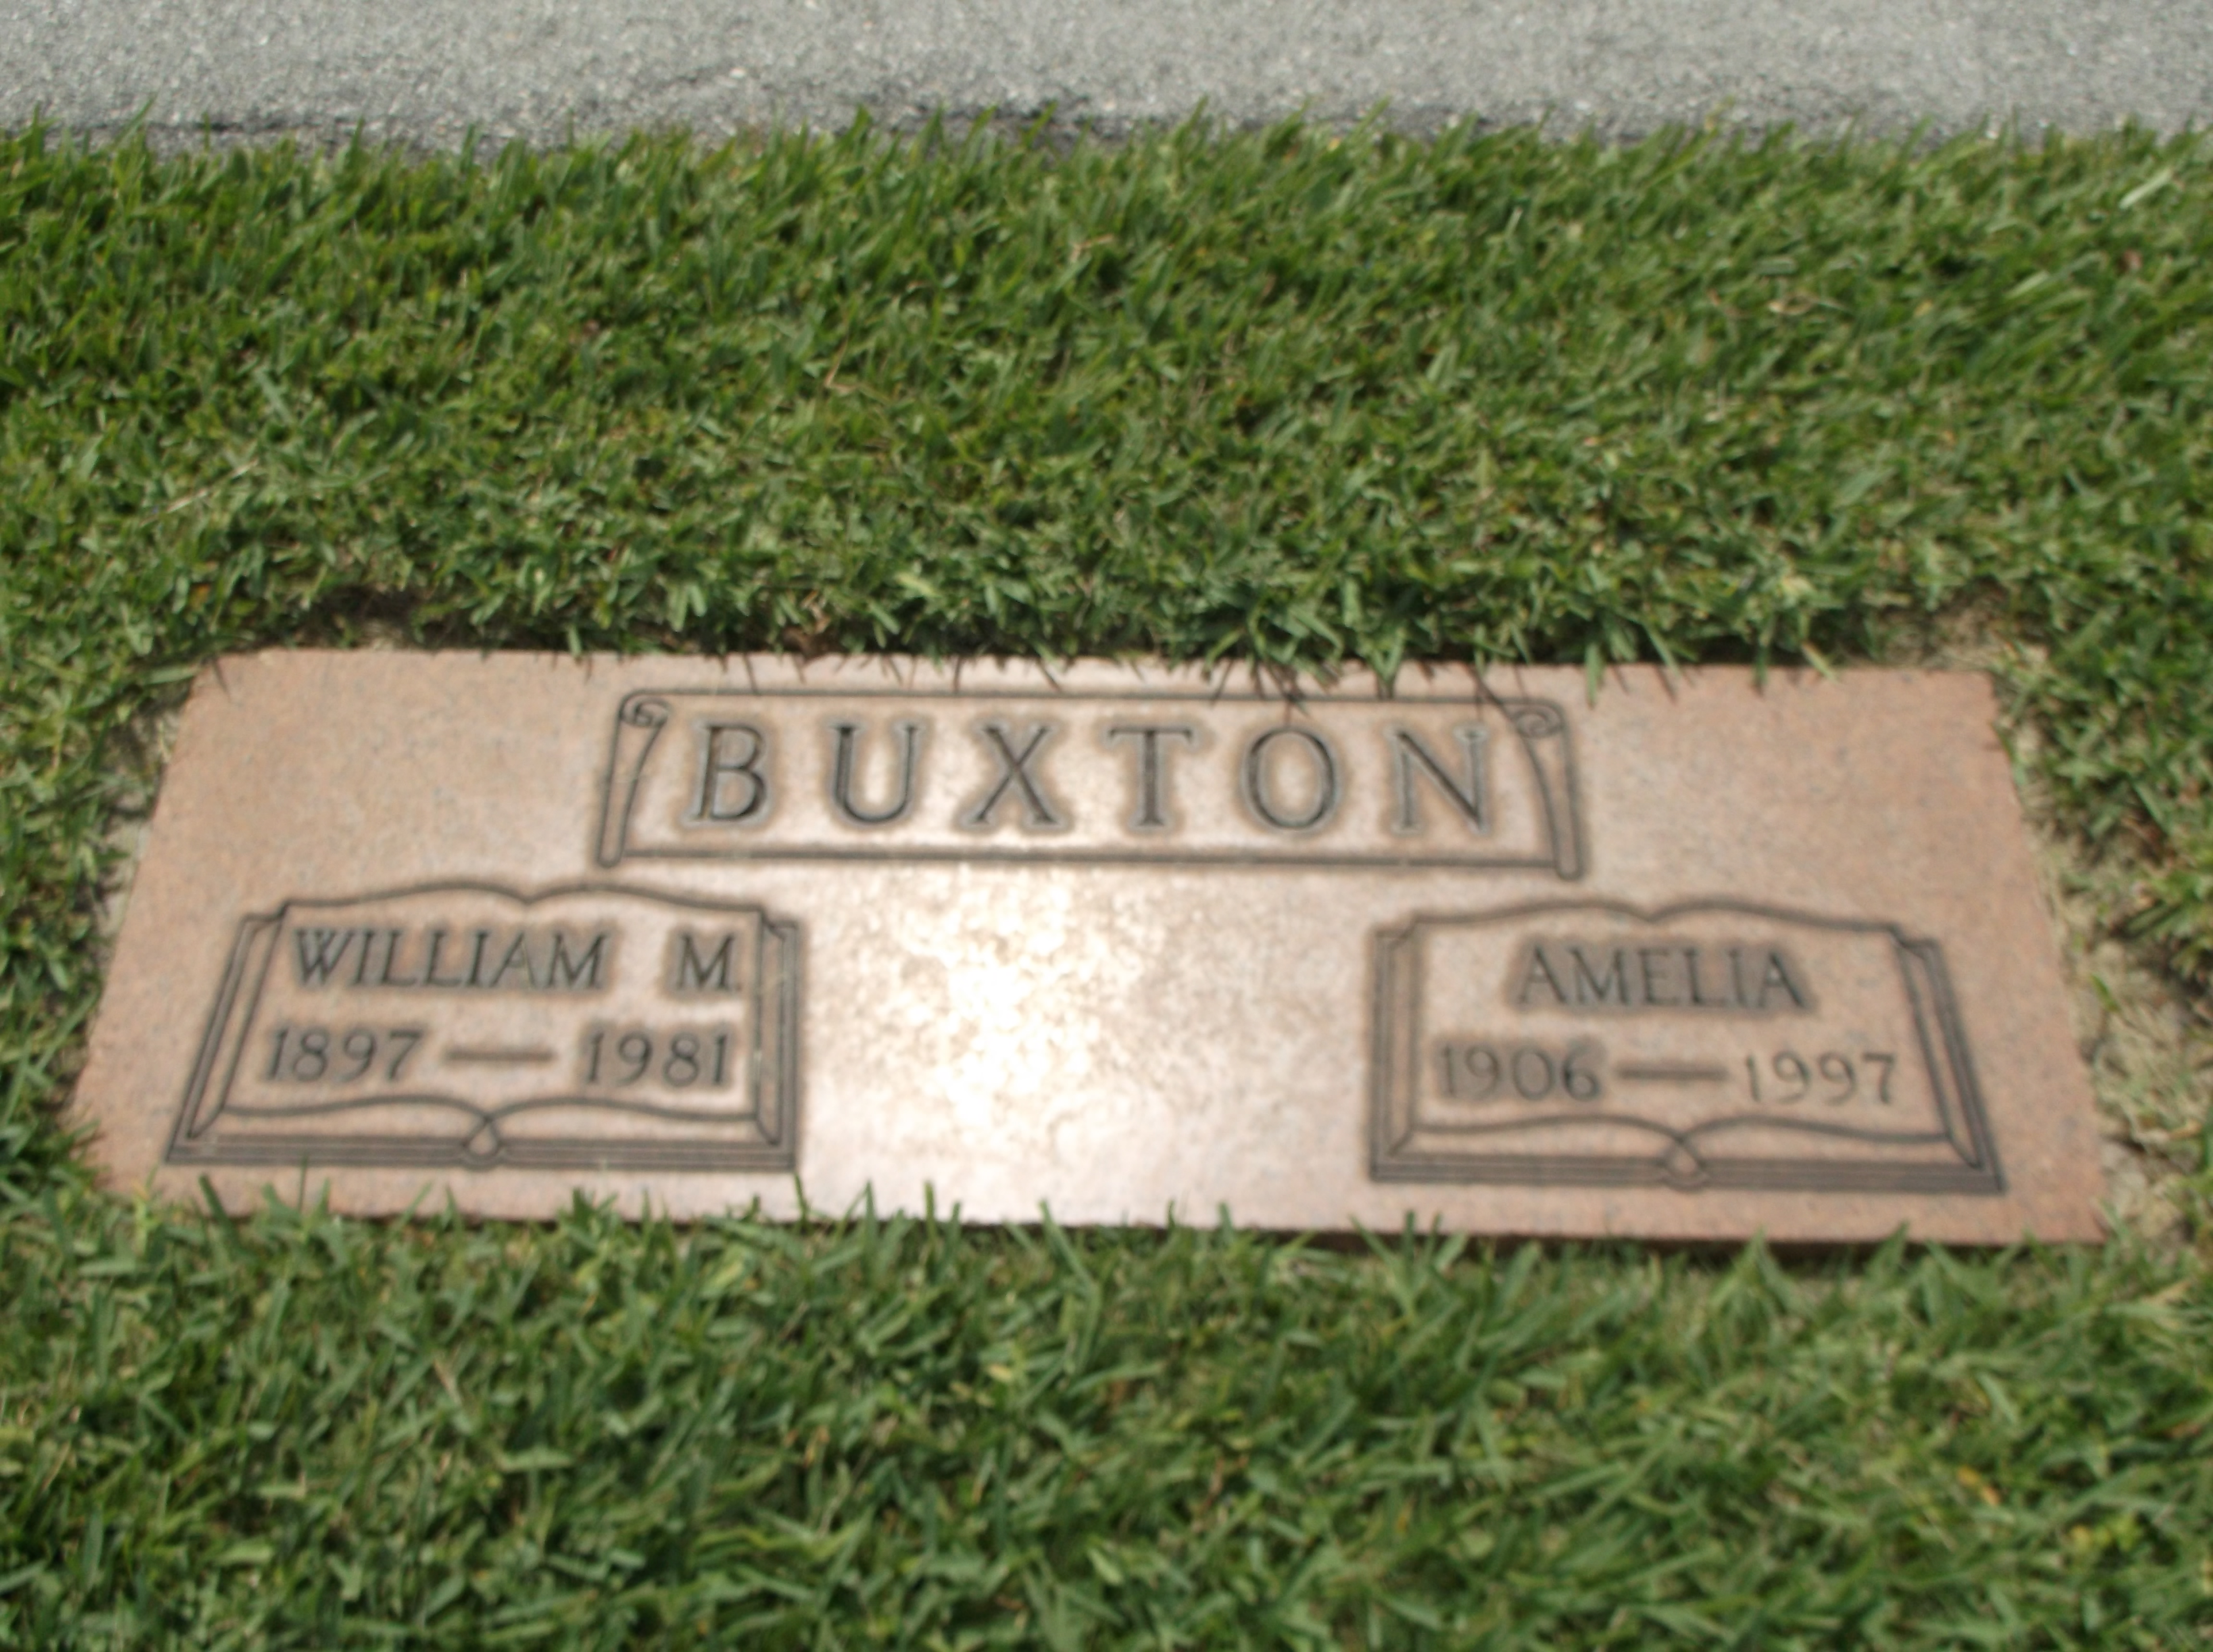 William M Buxton